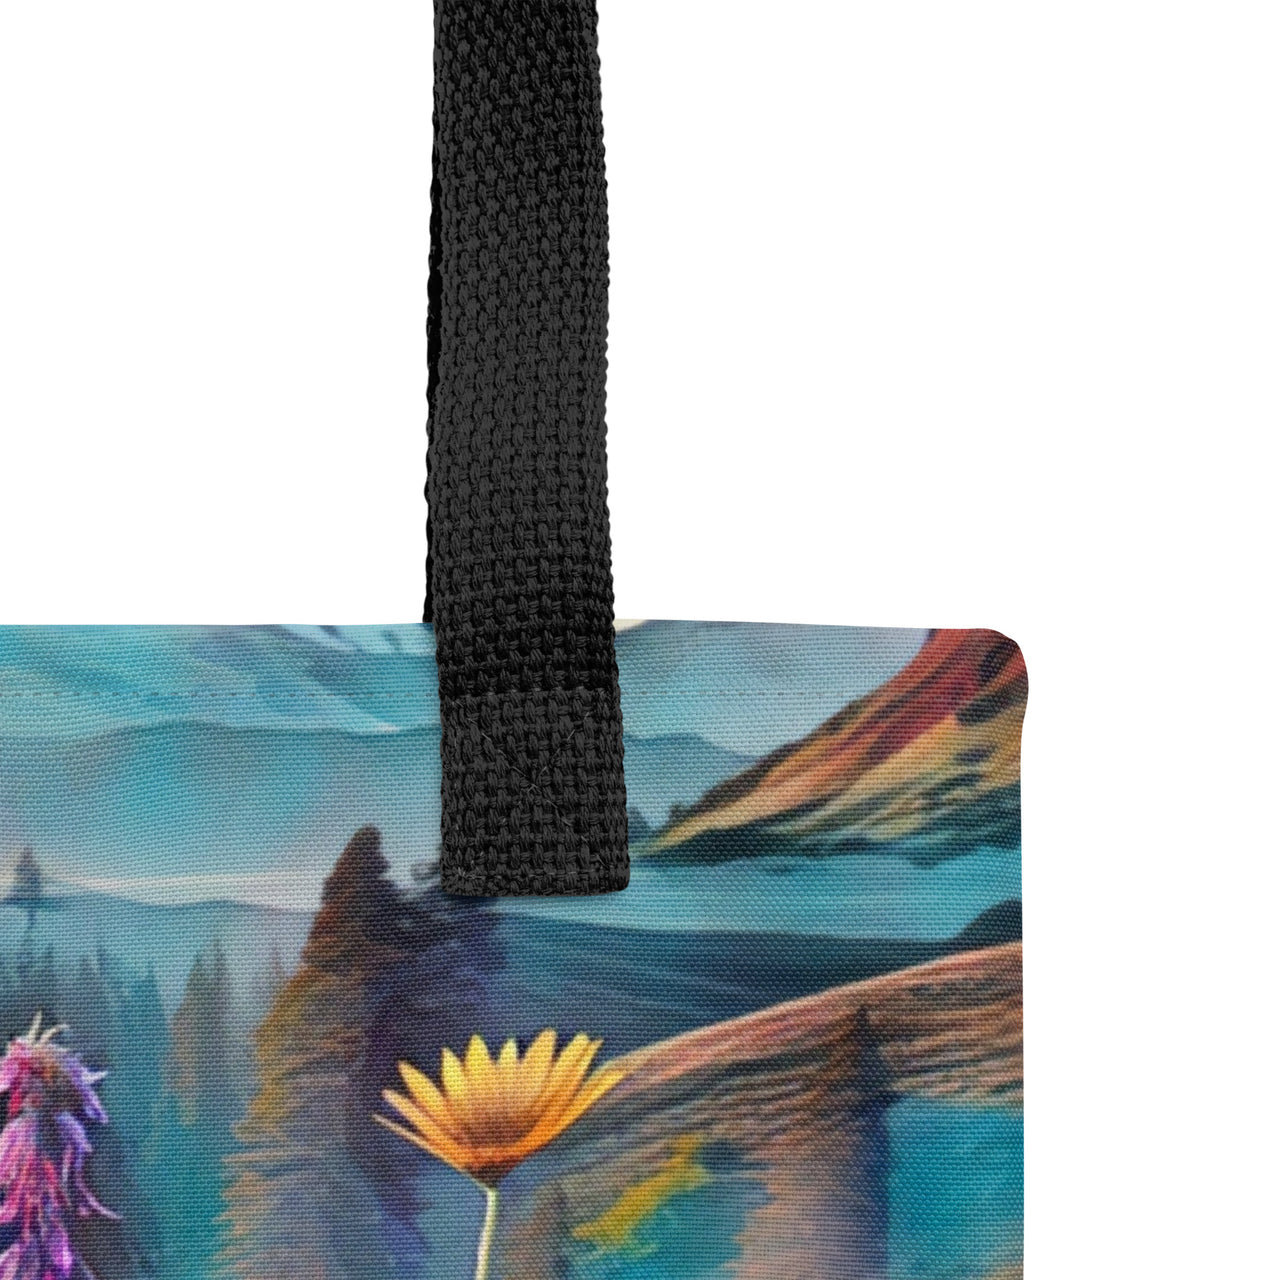 Oregon Wildflowers/2 - Tote bag